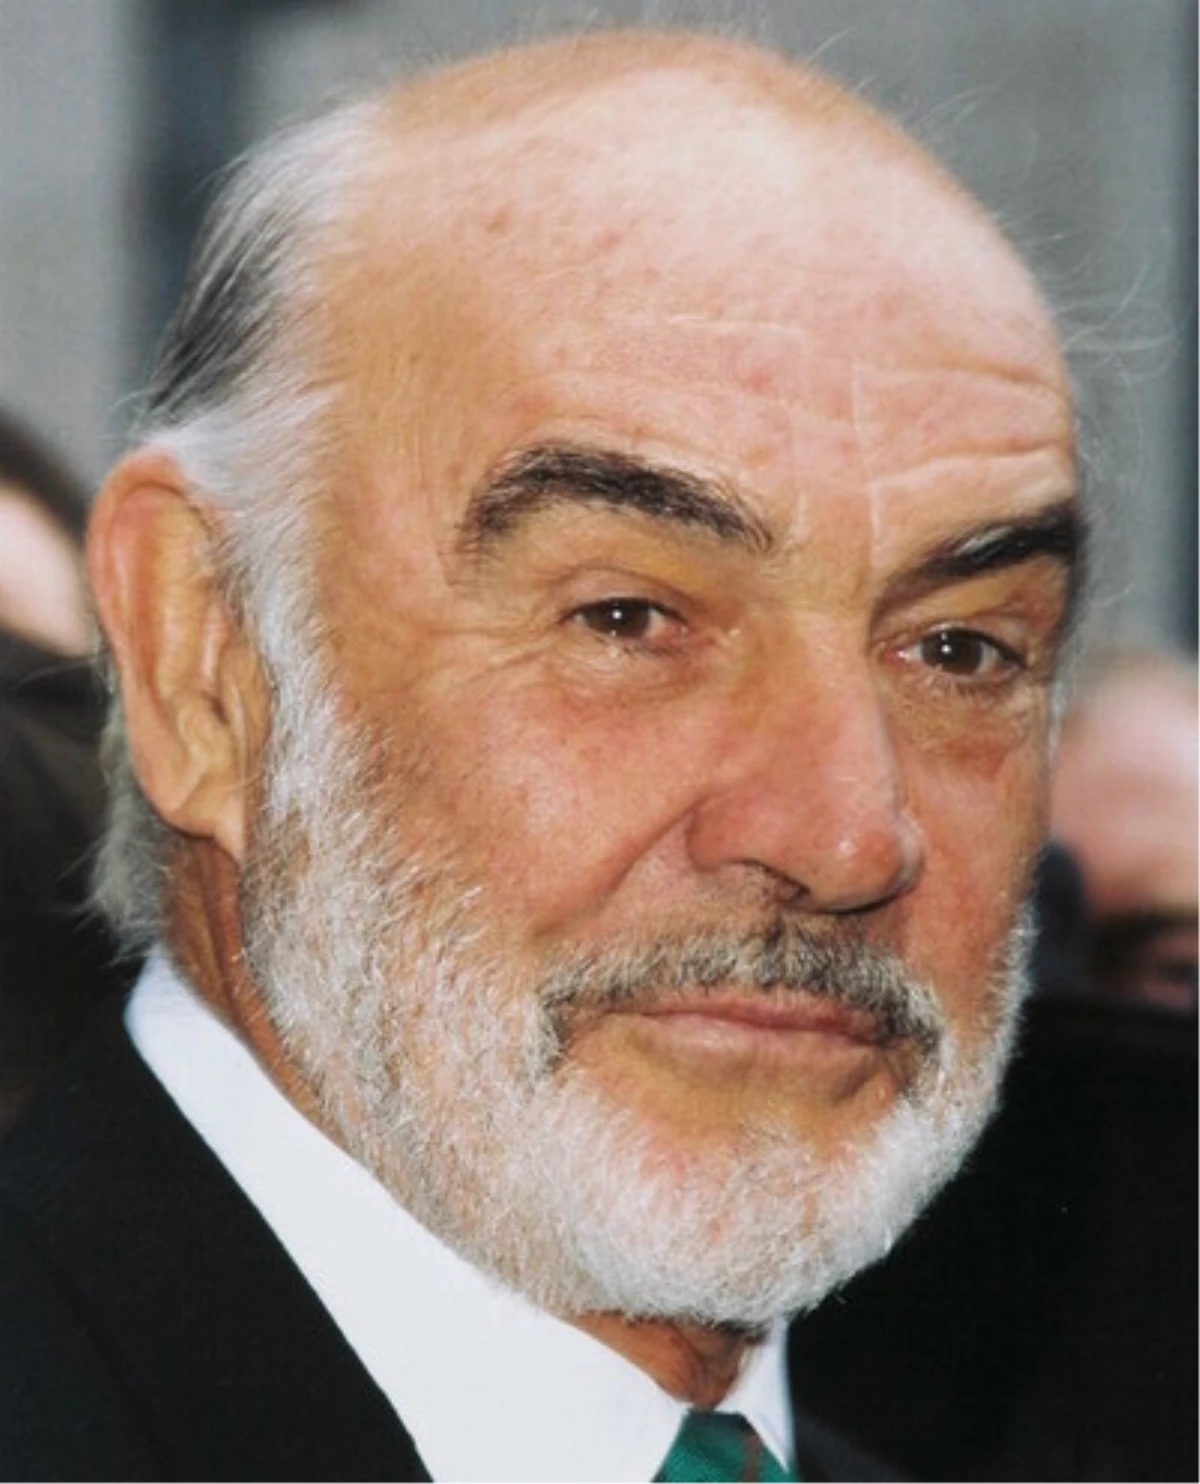 Ünlü Aktör Connery\'ye Alzheimer Teşhisi Konulduğu İddia Edildi